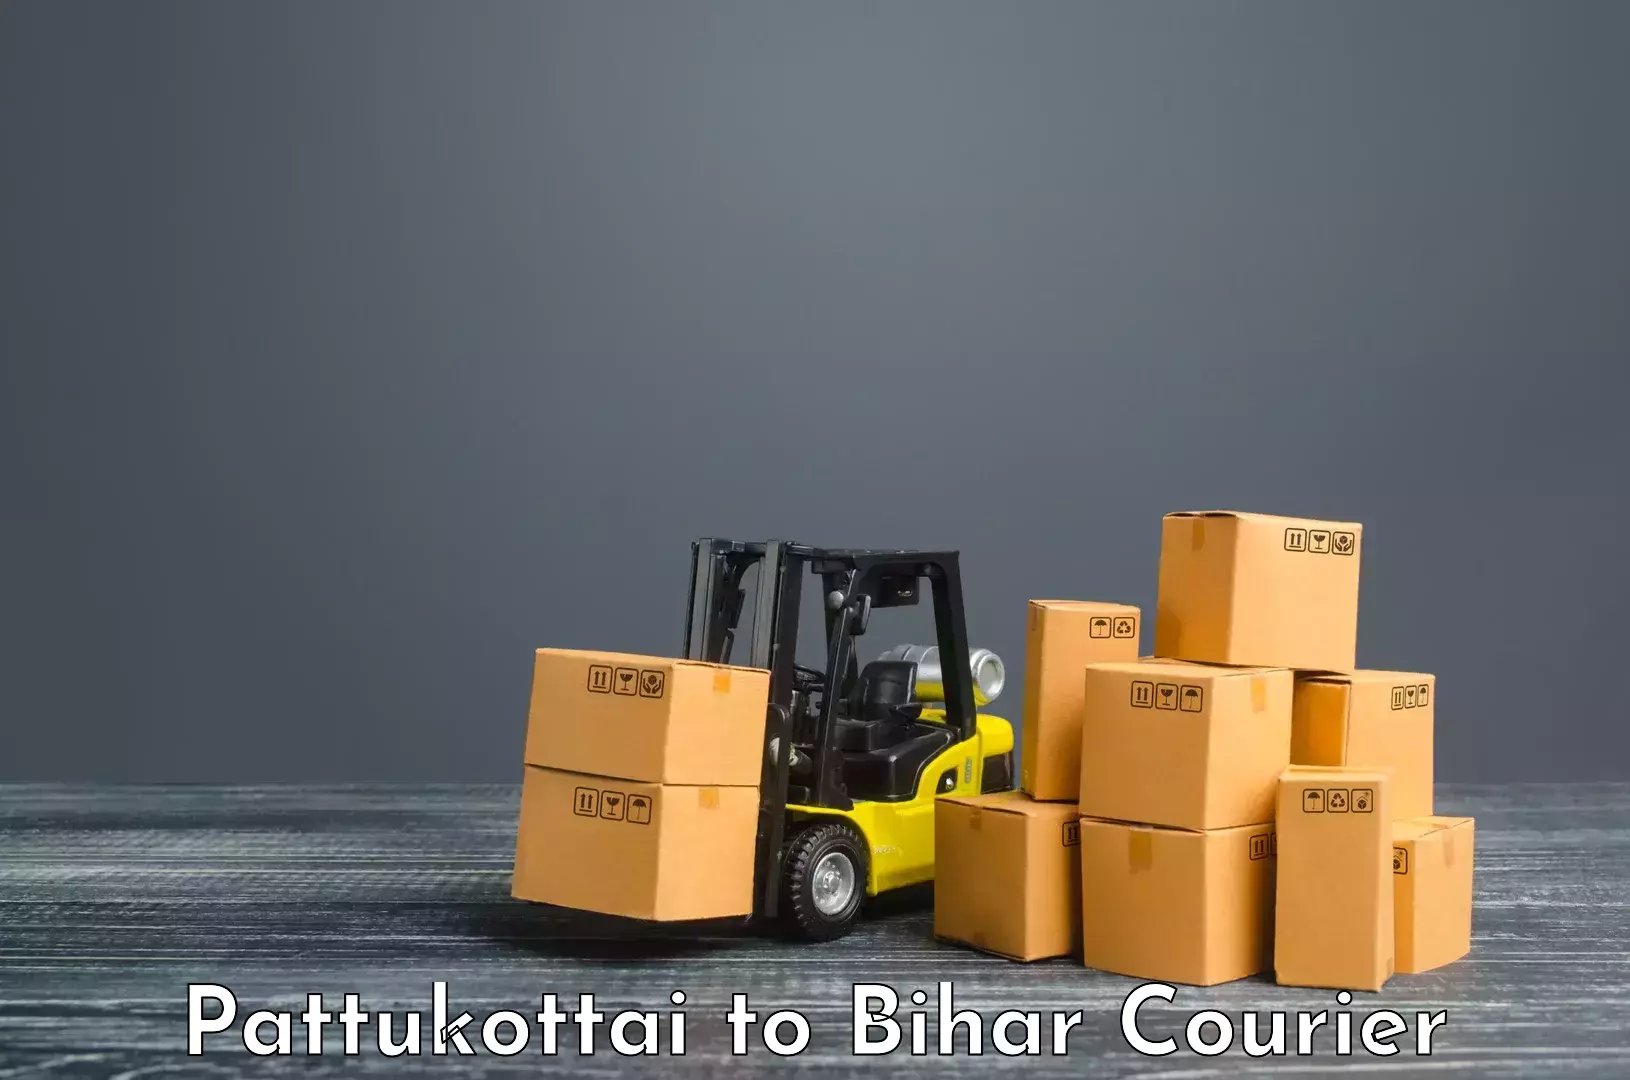 Urban courier service Pattukottai to Jagdishpur Bhojpur